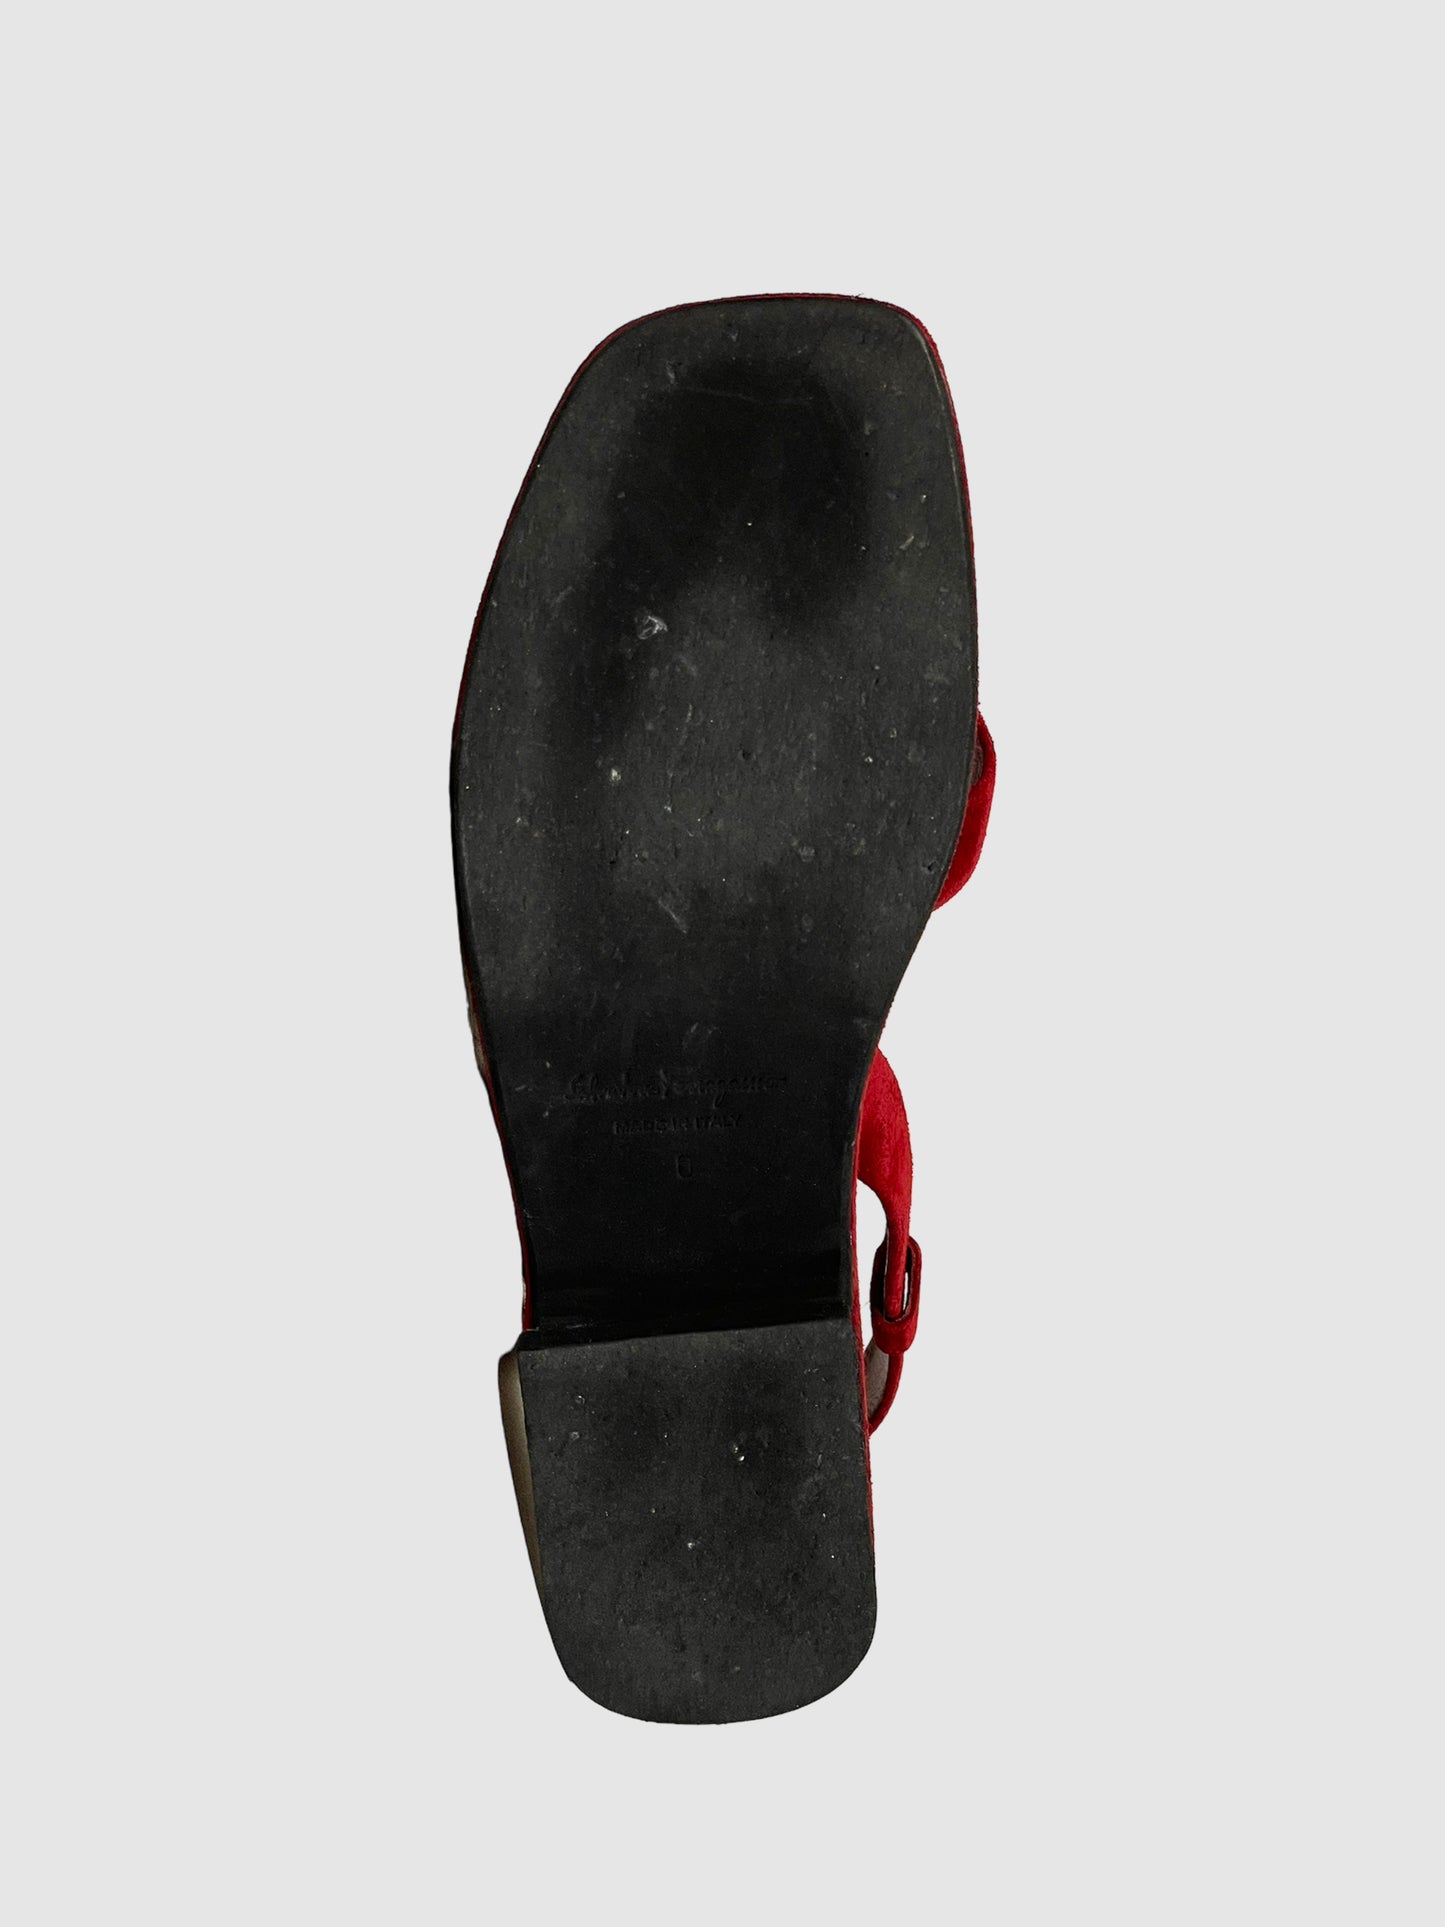 Salvatore Ferragamo Suede Platform Sandals - Size 6